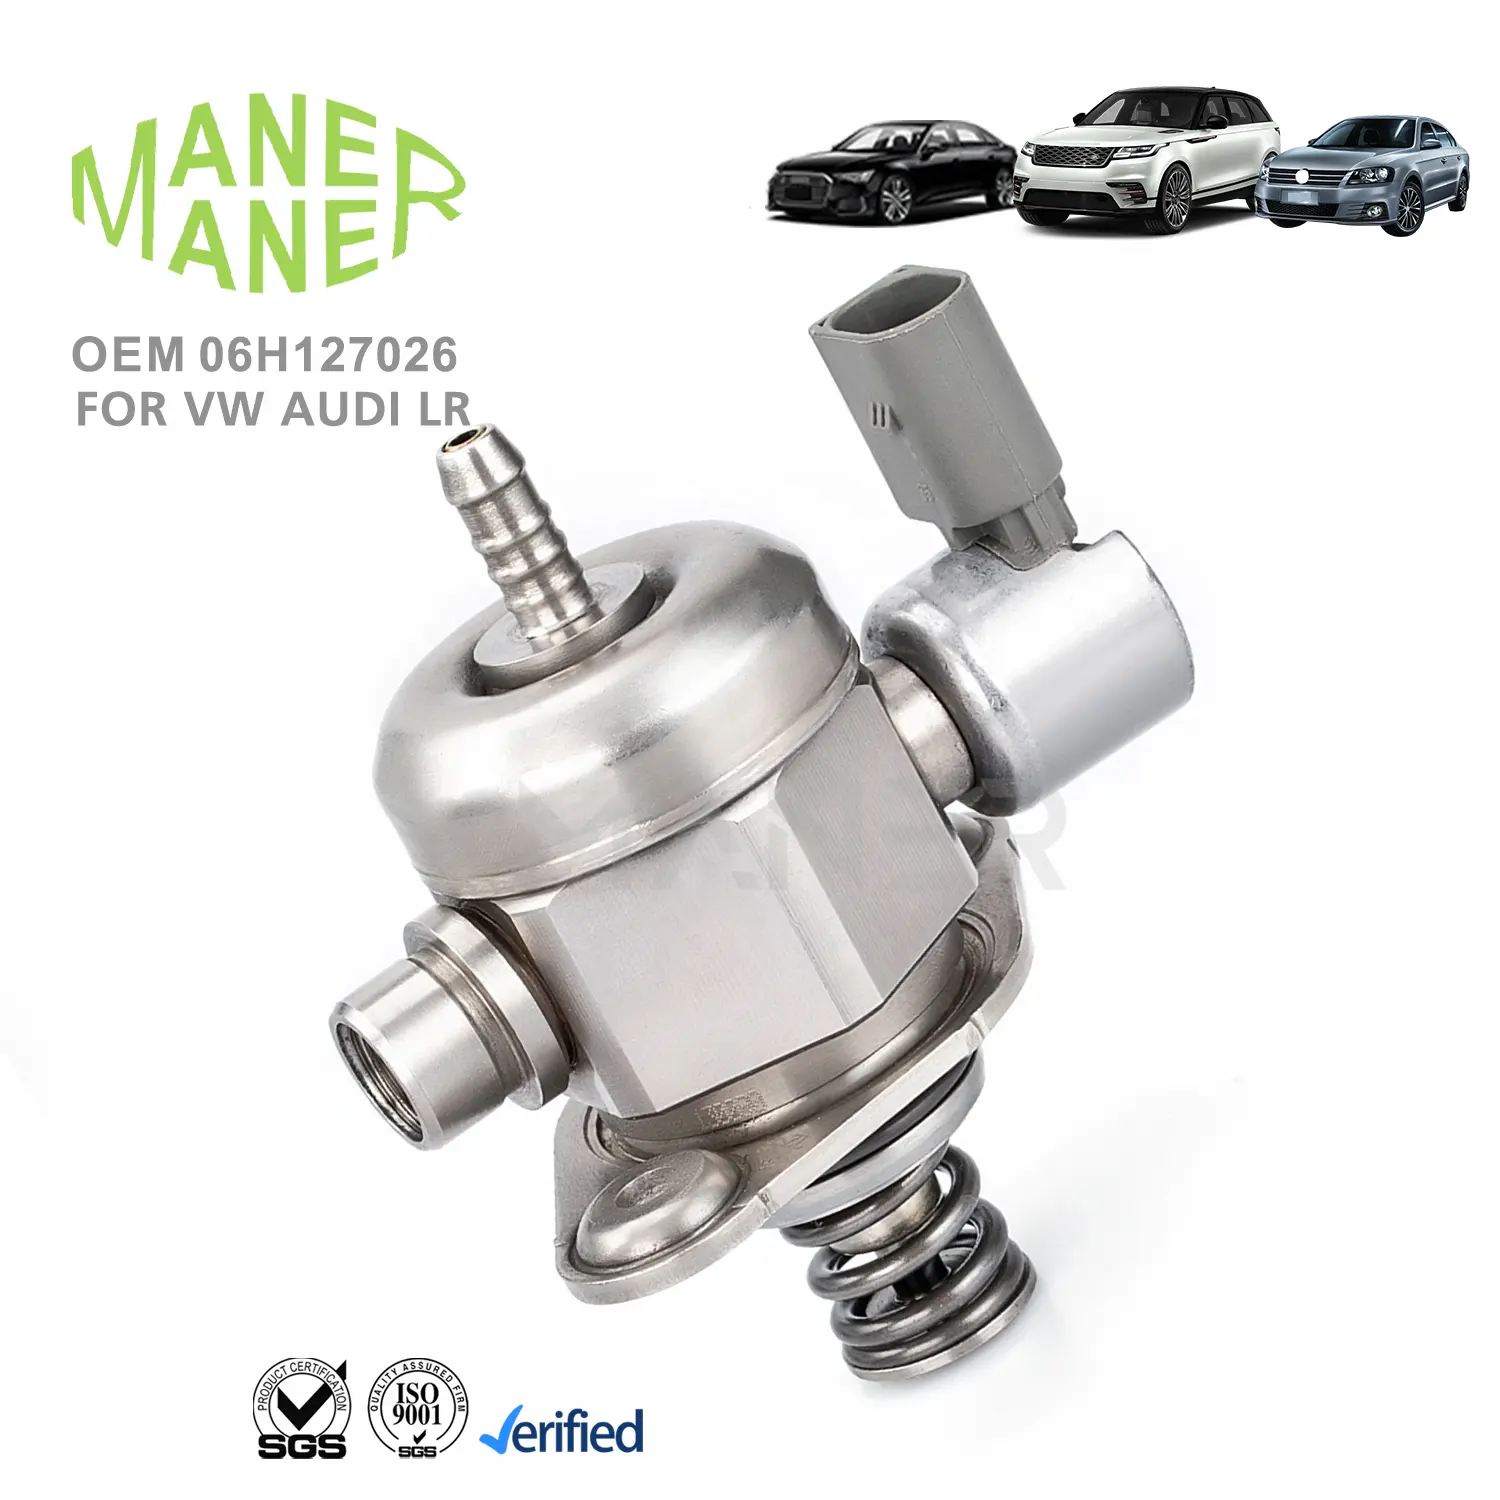 Sistemi motore Auto MANER 06 h127026 gruppo pompa carburante Diesel ben fatto per VW Audi EA888 1.8T